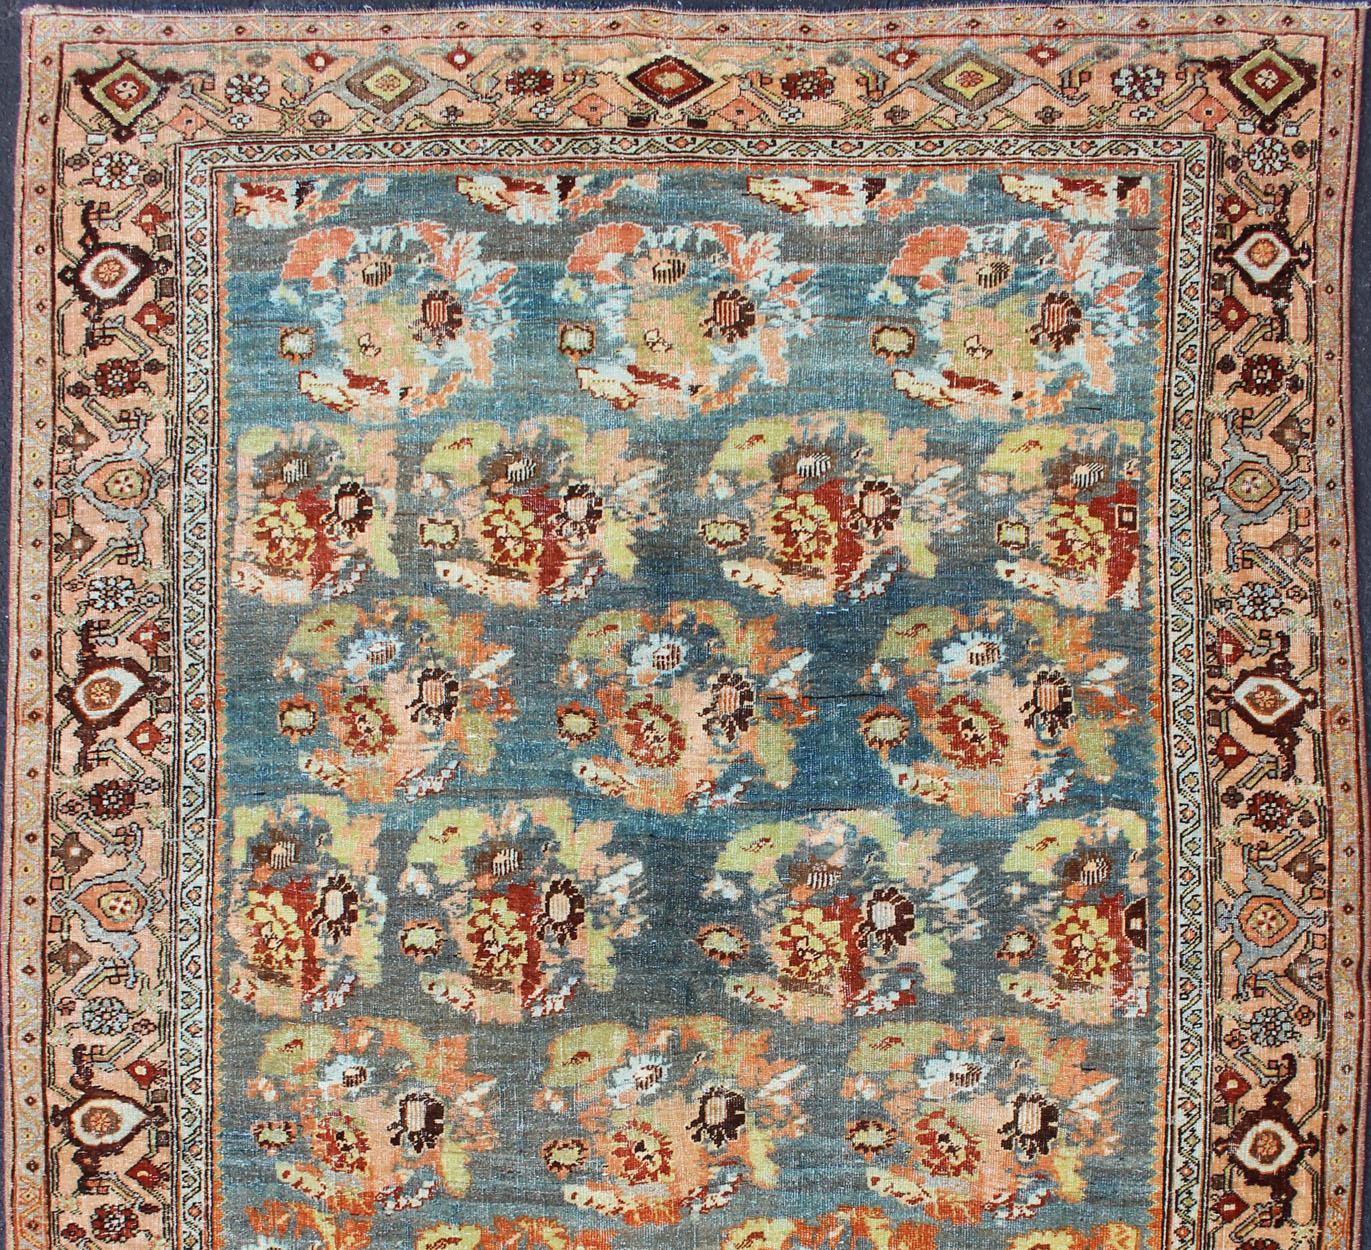 Verziertes Blumenmuster Bidjar antiker Perserteppich in einer Vielzahl von Farben, Teppich SUS-2007-247, Herkunftsland / Typ: Iran / Bidjar, um 1910

Dieser prächtige Bidjar mit einem exquisiten Allover-Muster ruht wunderschön auf einem hellblauen